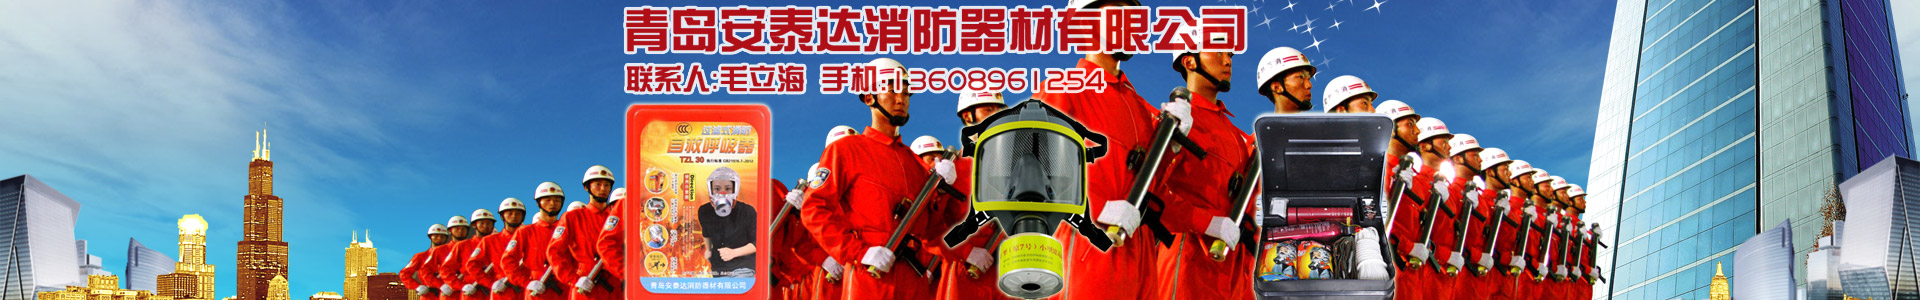 滅火器試壓試驗臺-維修設備-青島安泰達消防器材有限公司-